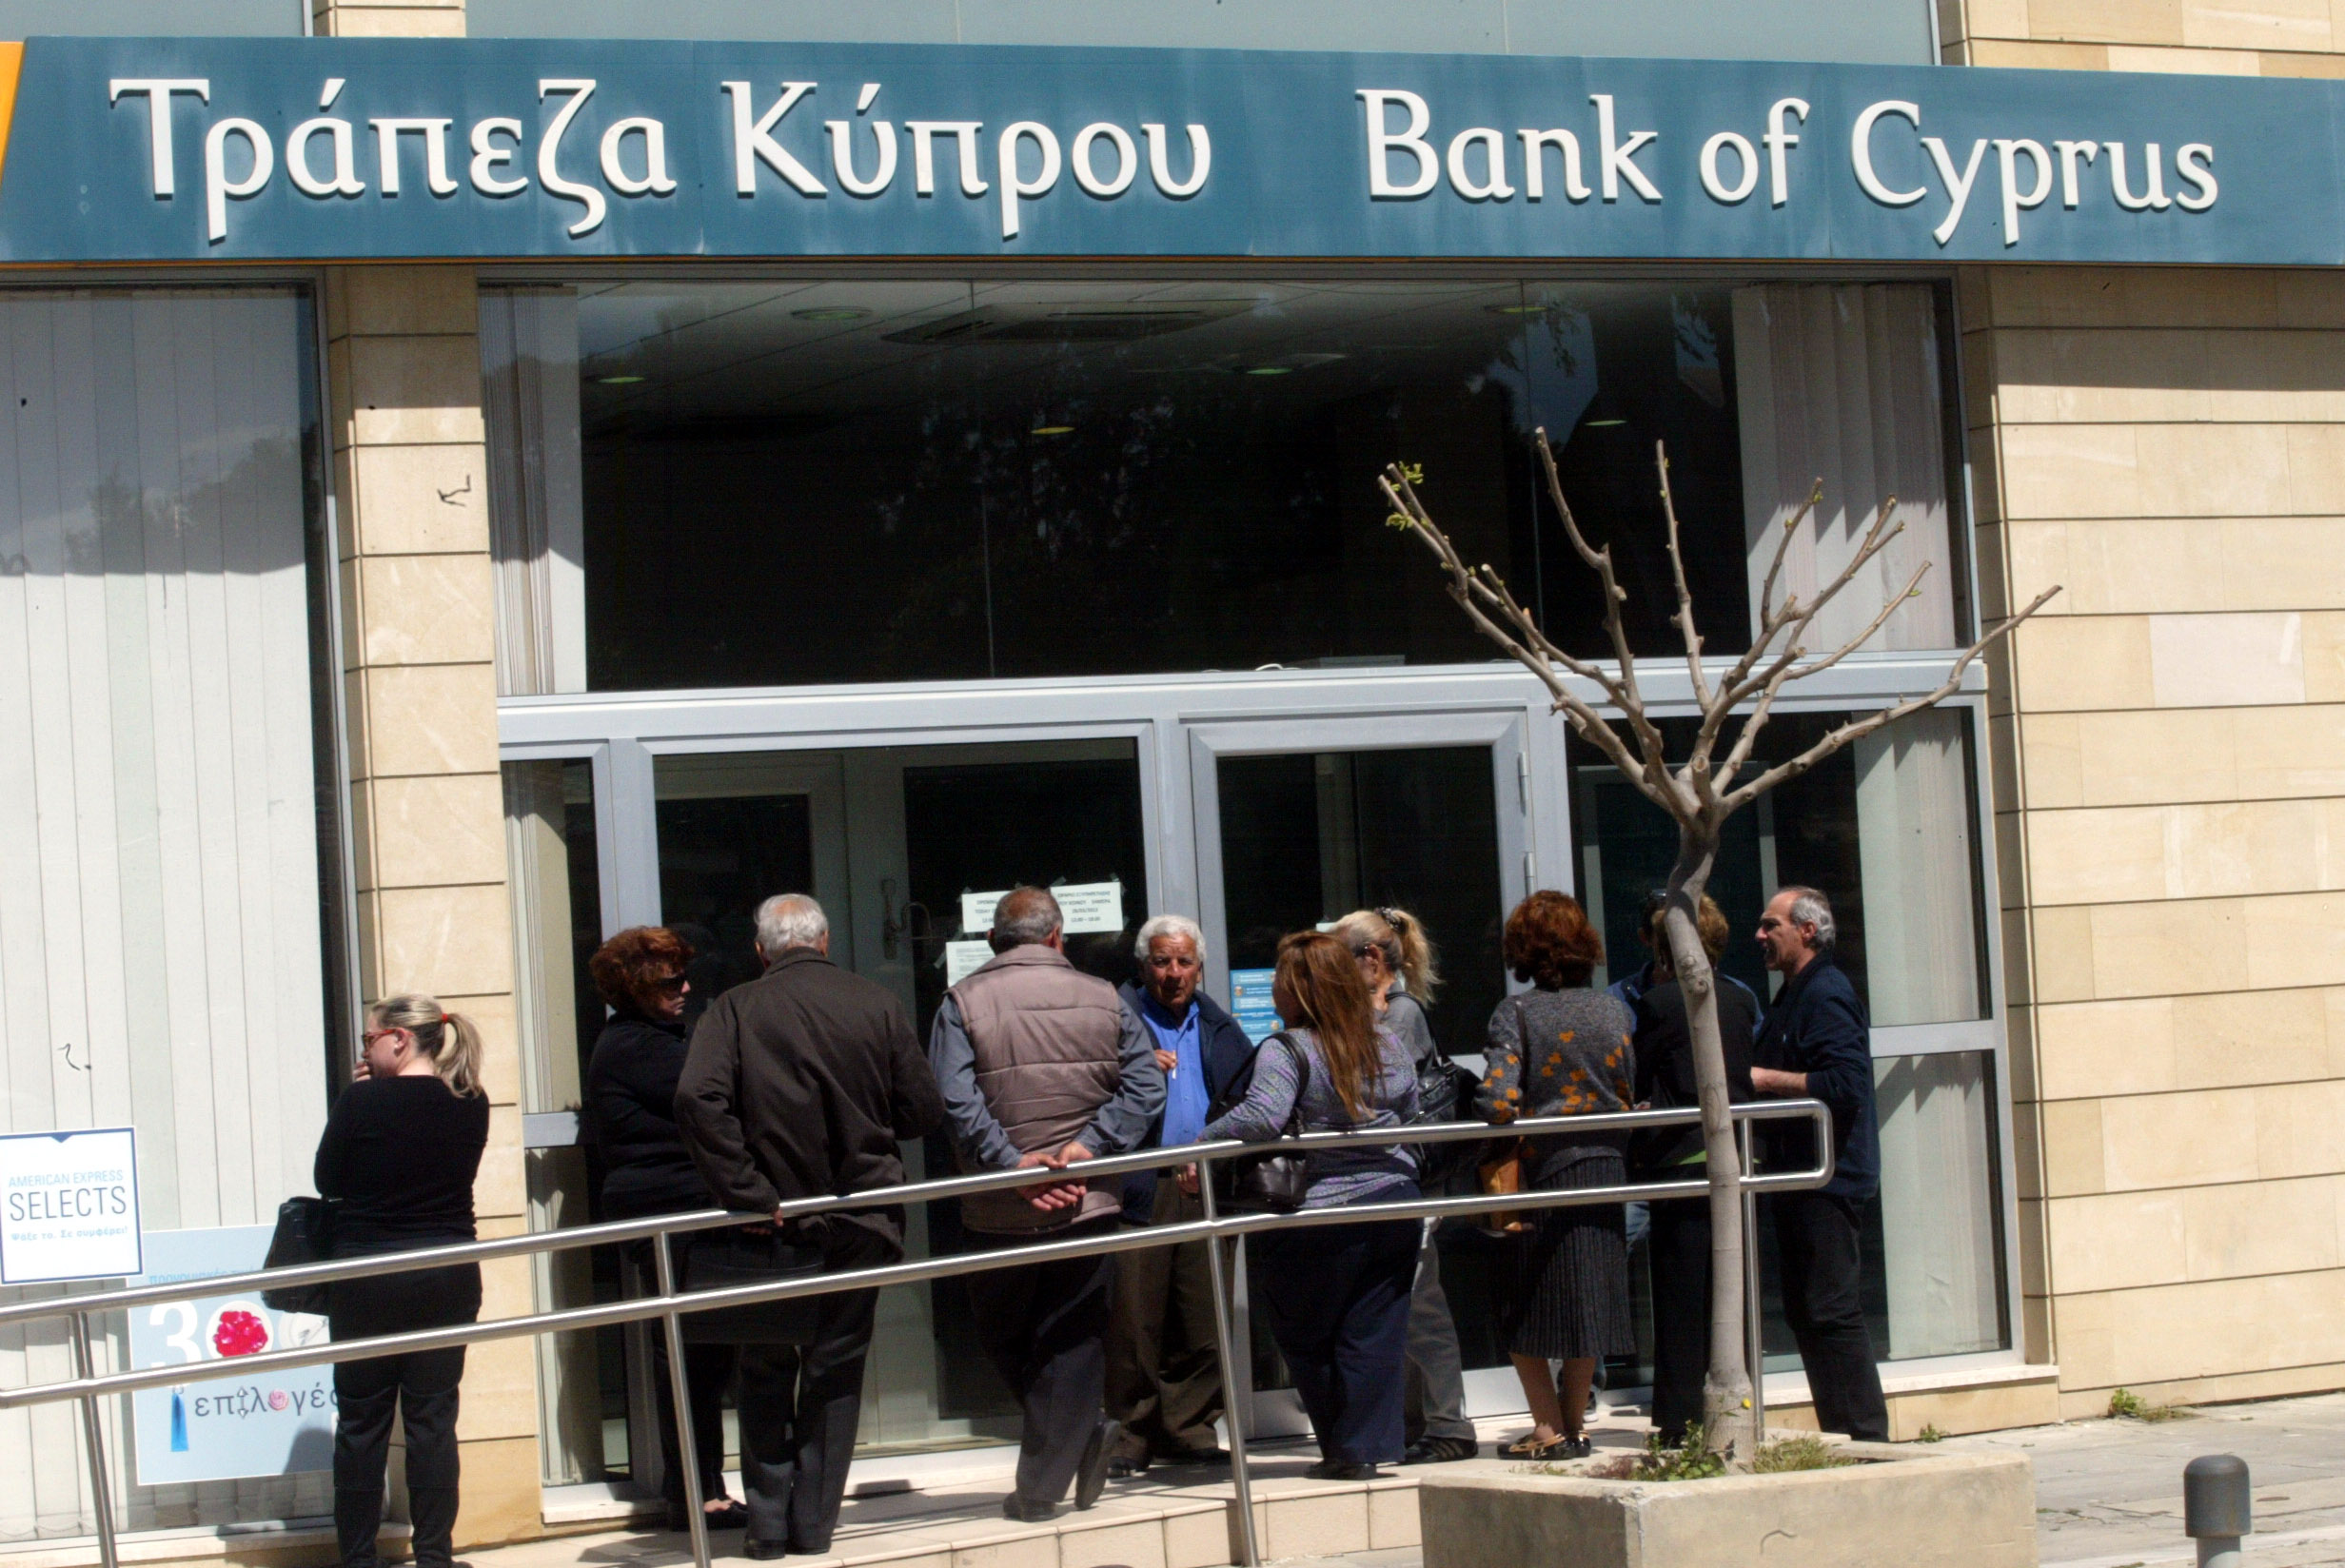 Η Κεντρική ζητά από την Κύπρου άμεση έκδοση κεφαλαίου